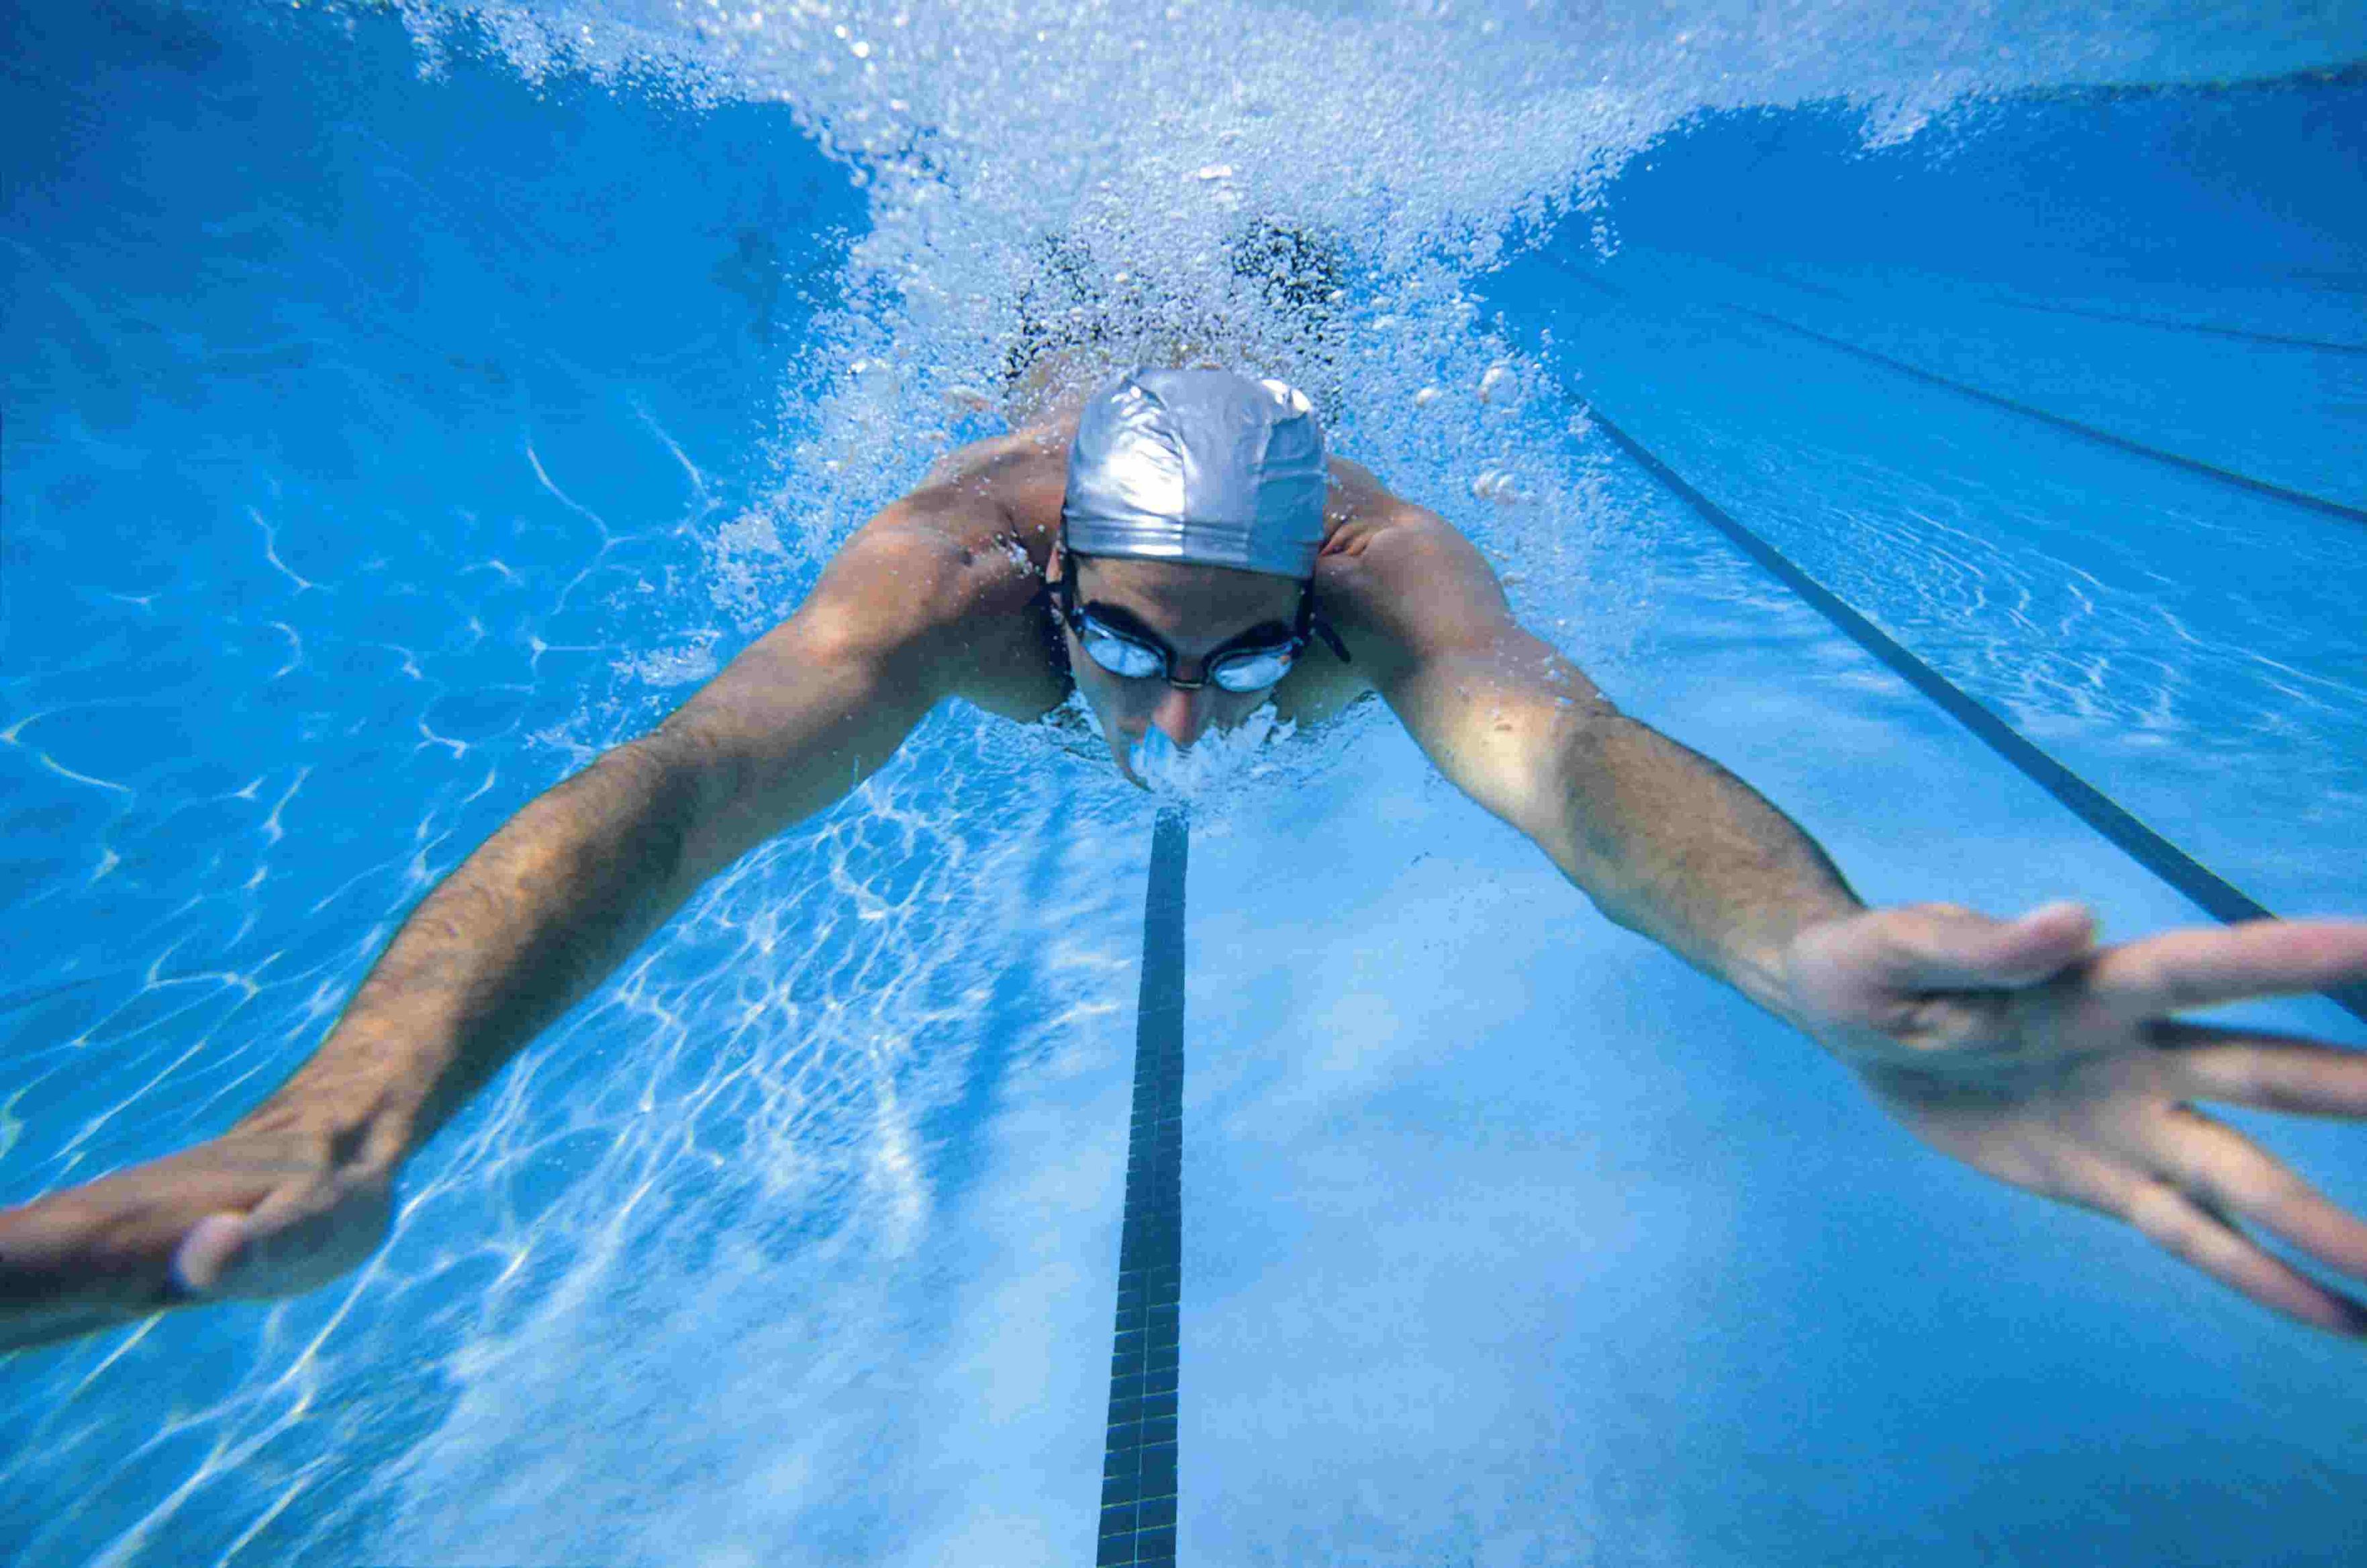 Первенство ГБУ ДО КДЮСШ (к) по плаванию «Олимпийские надежды», посвященное празднованию Дня России. 